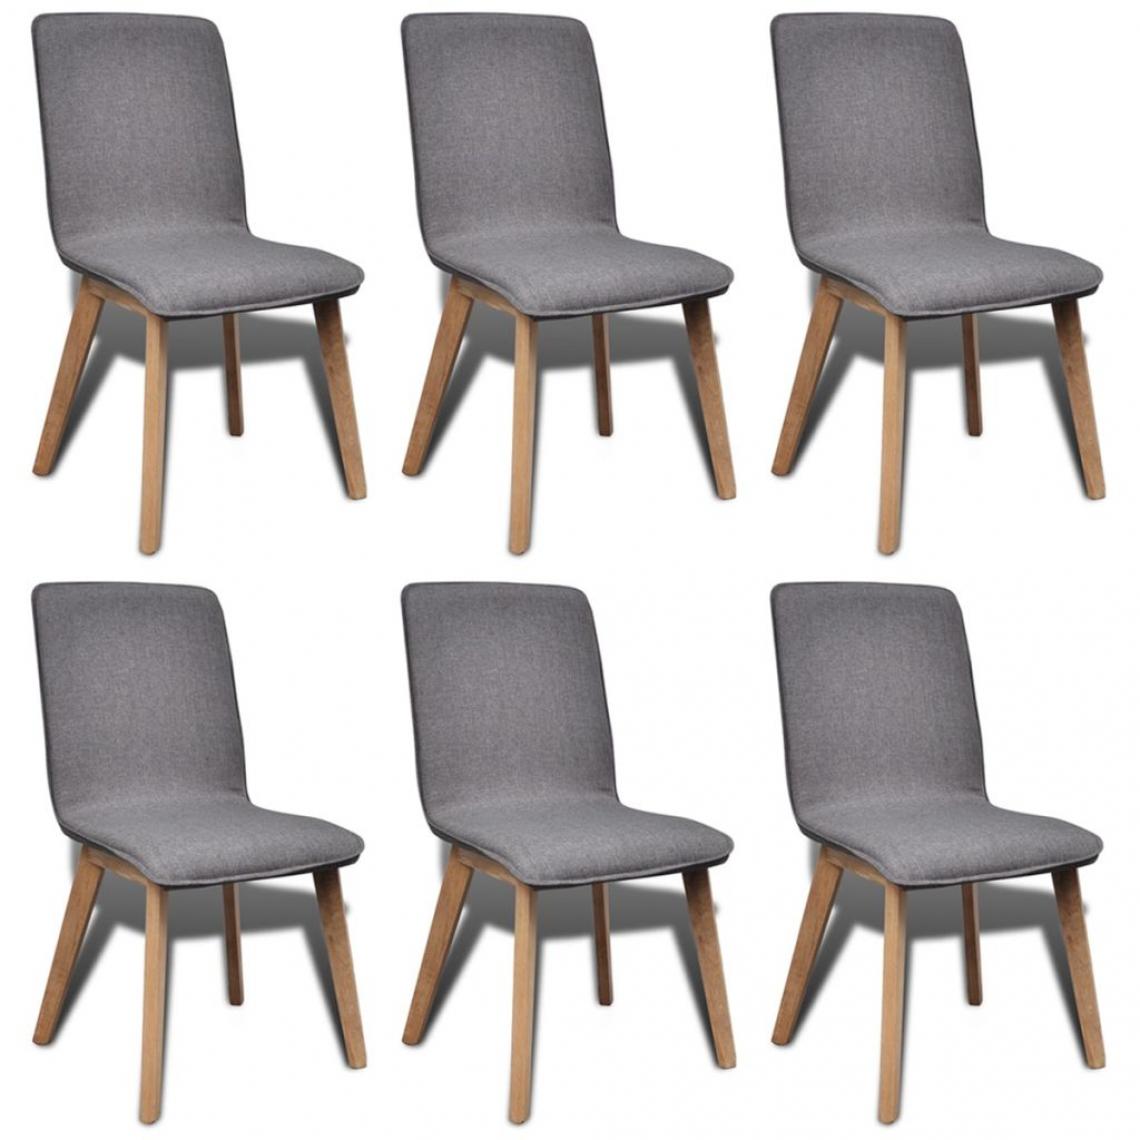 Decoshop26 - Lot de 6 chaises de salle à manger cuisines de salle à manger design classique tissu gris clair et chêne massif CDS022951 - Chaises